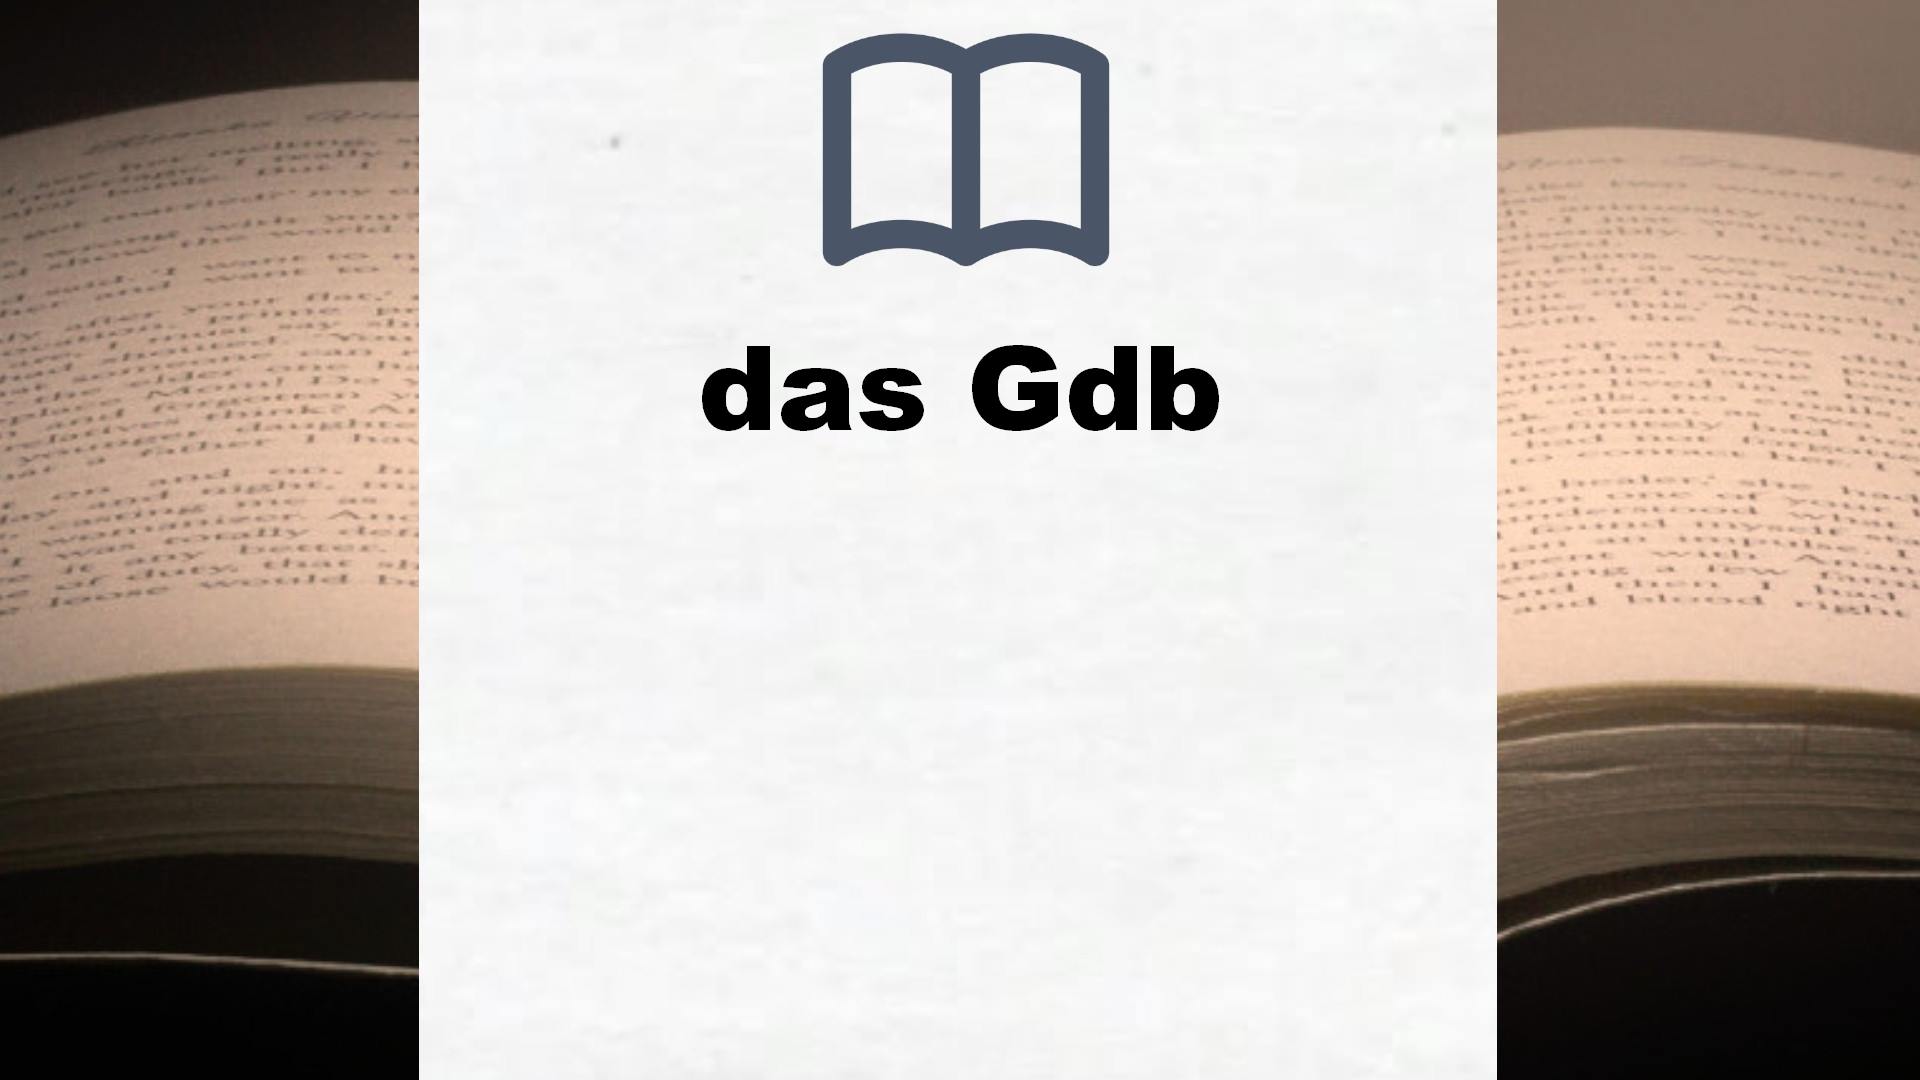 Bücher über das Gdb